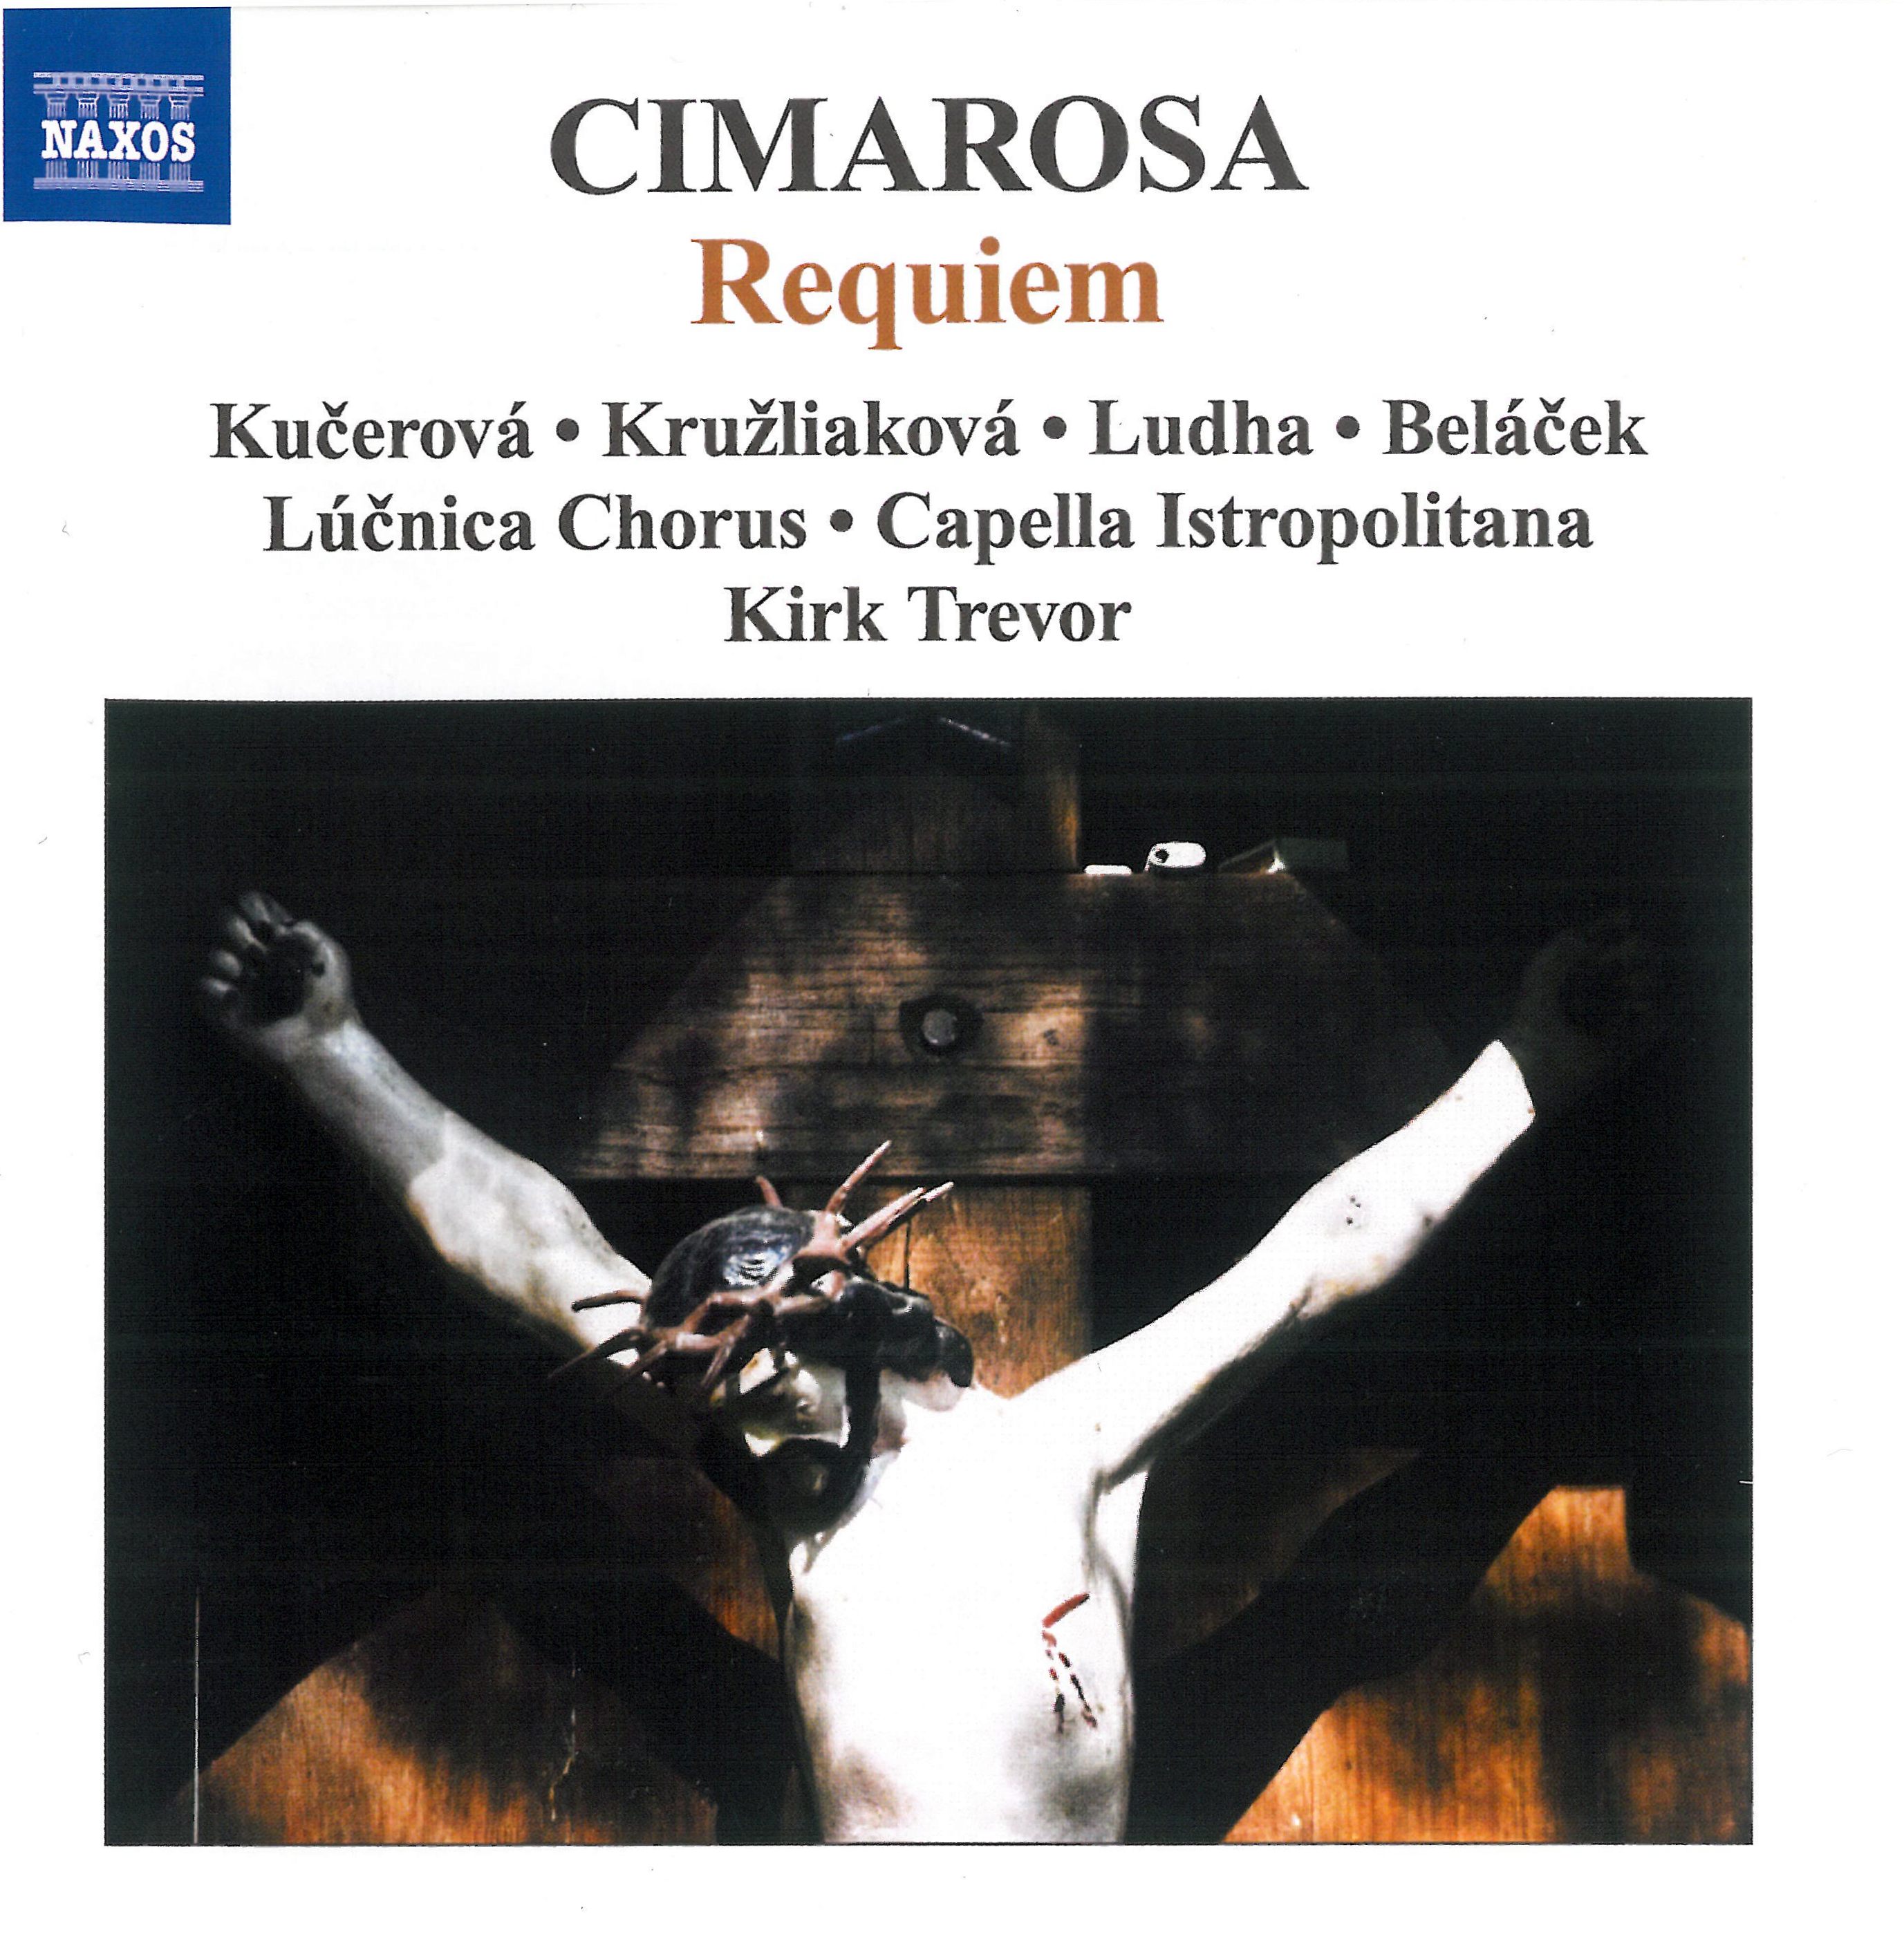 CD Cimarosa Requiem